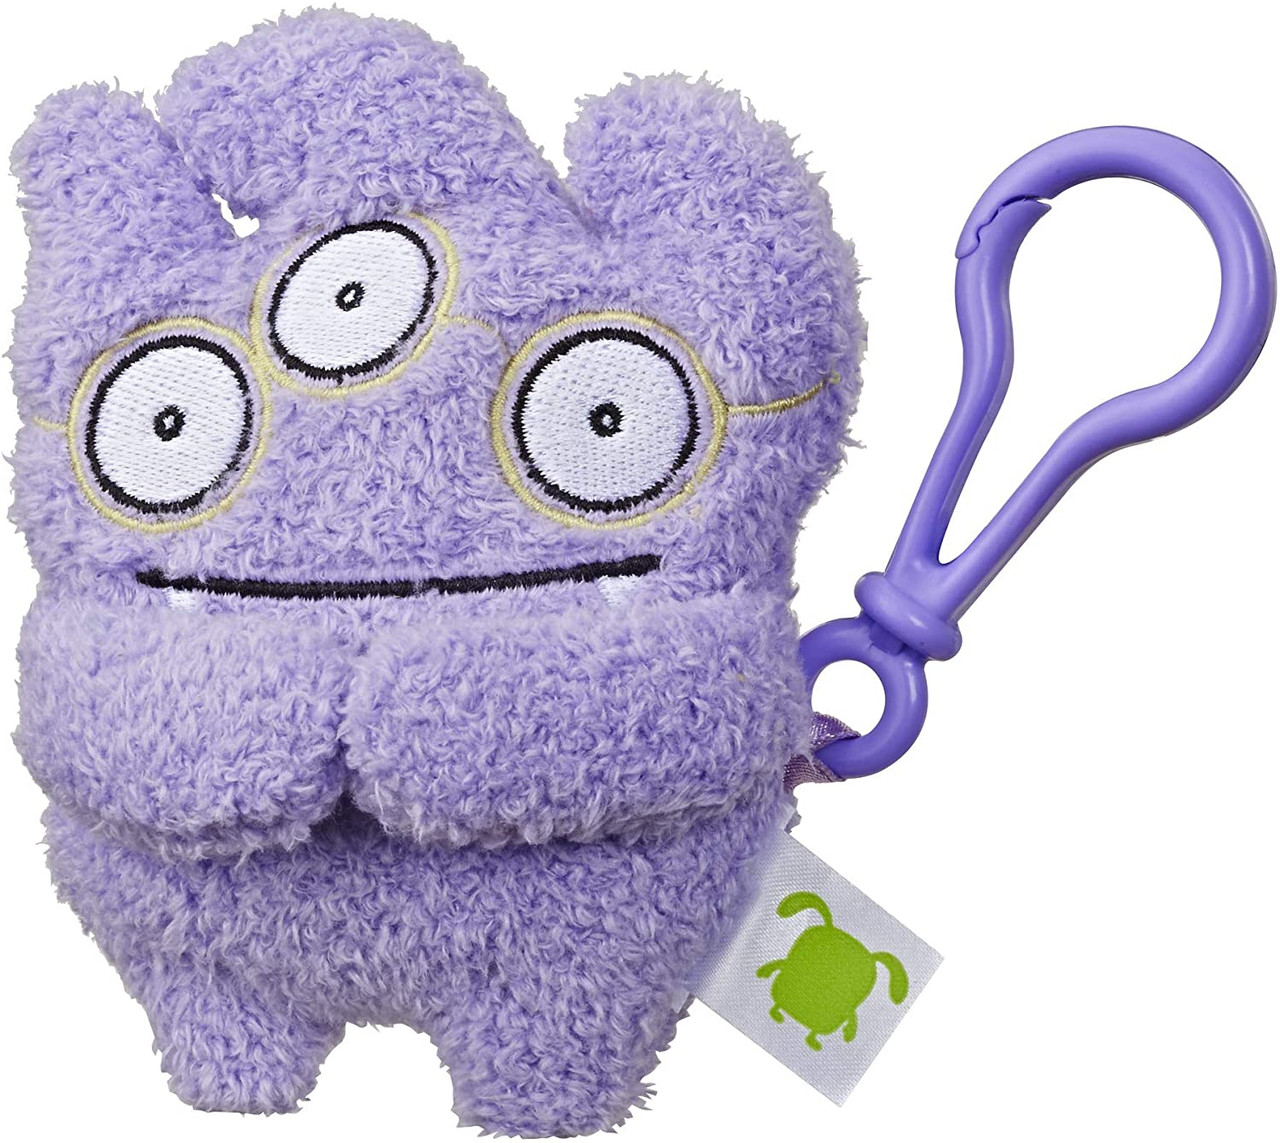 Uglydolls Tray to-Go Stuffed Plush Toy